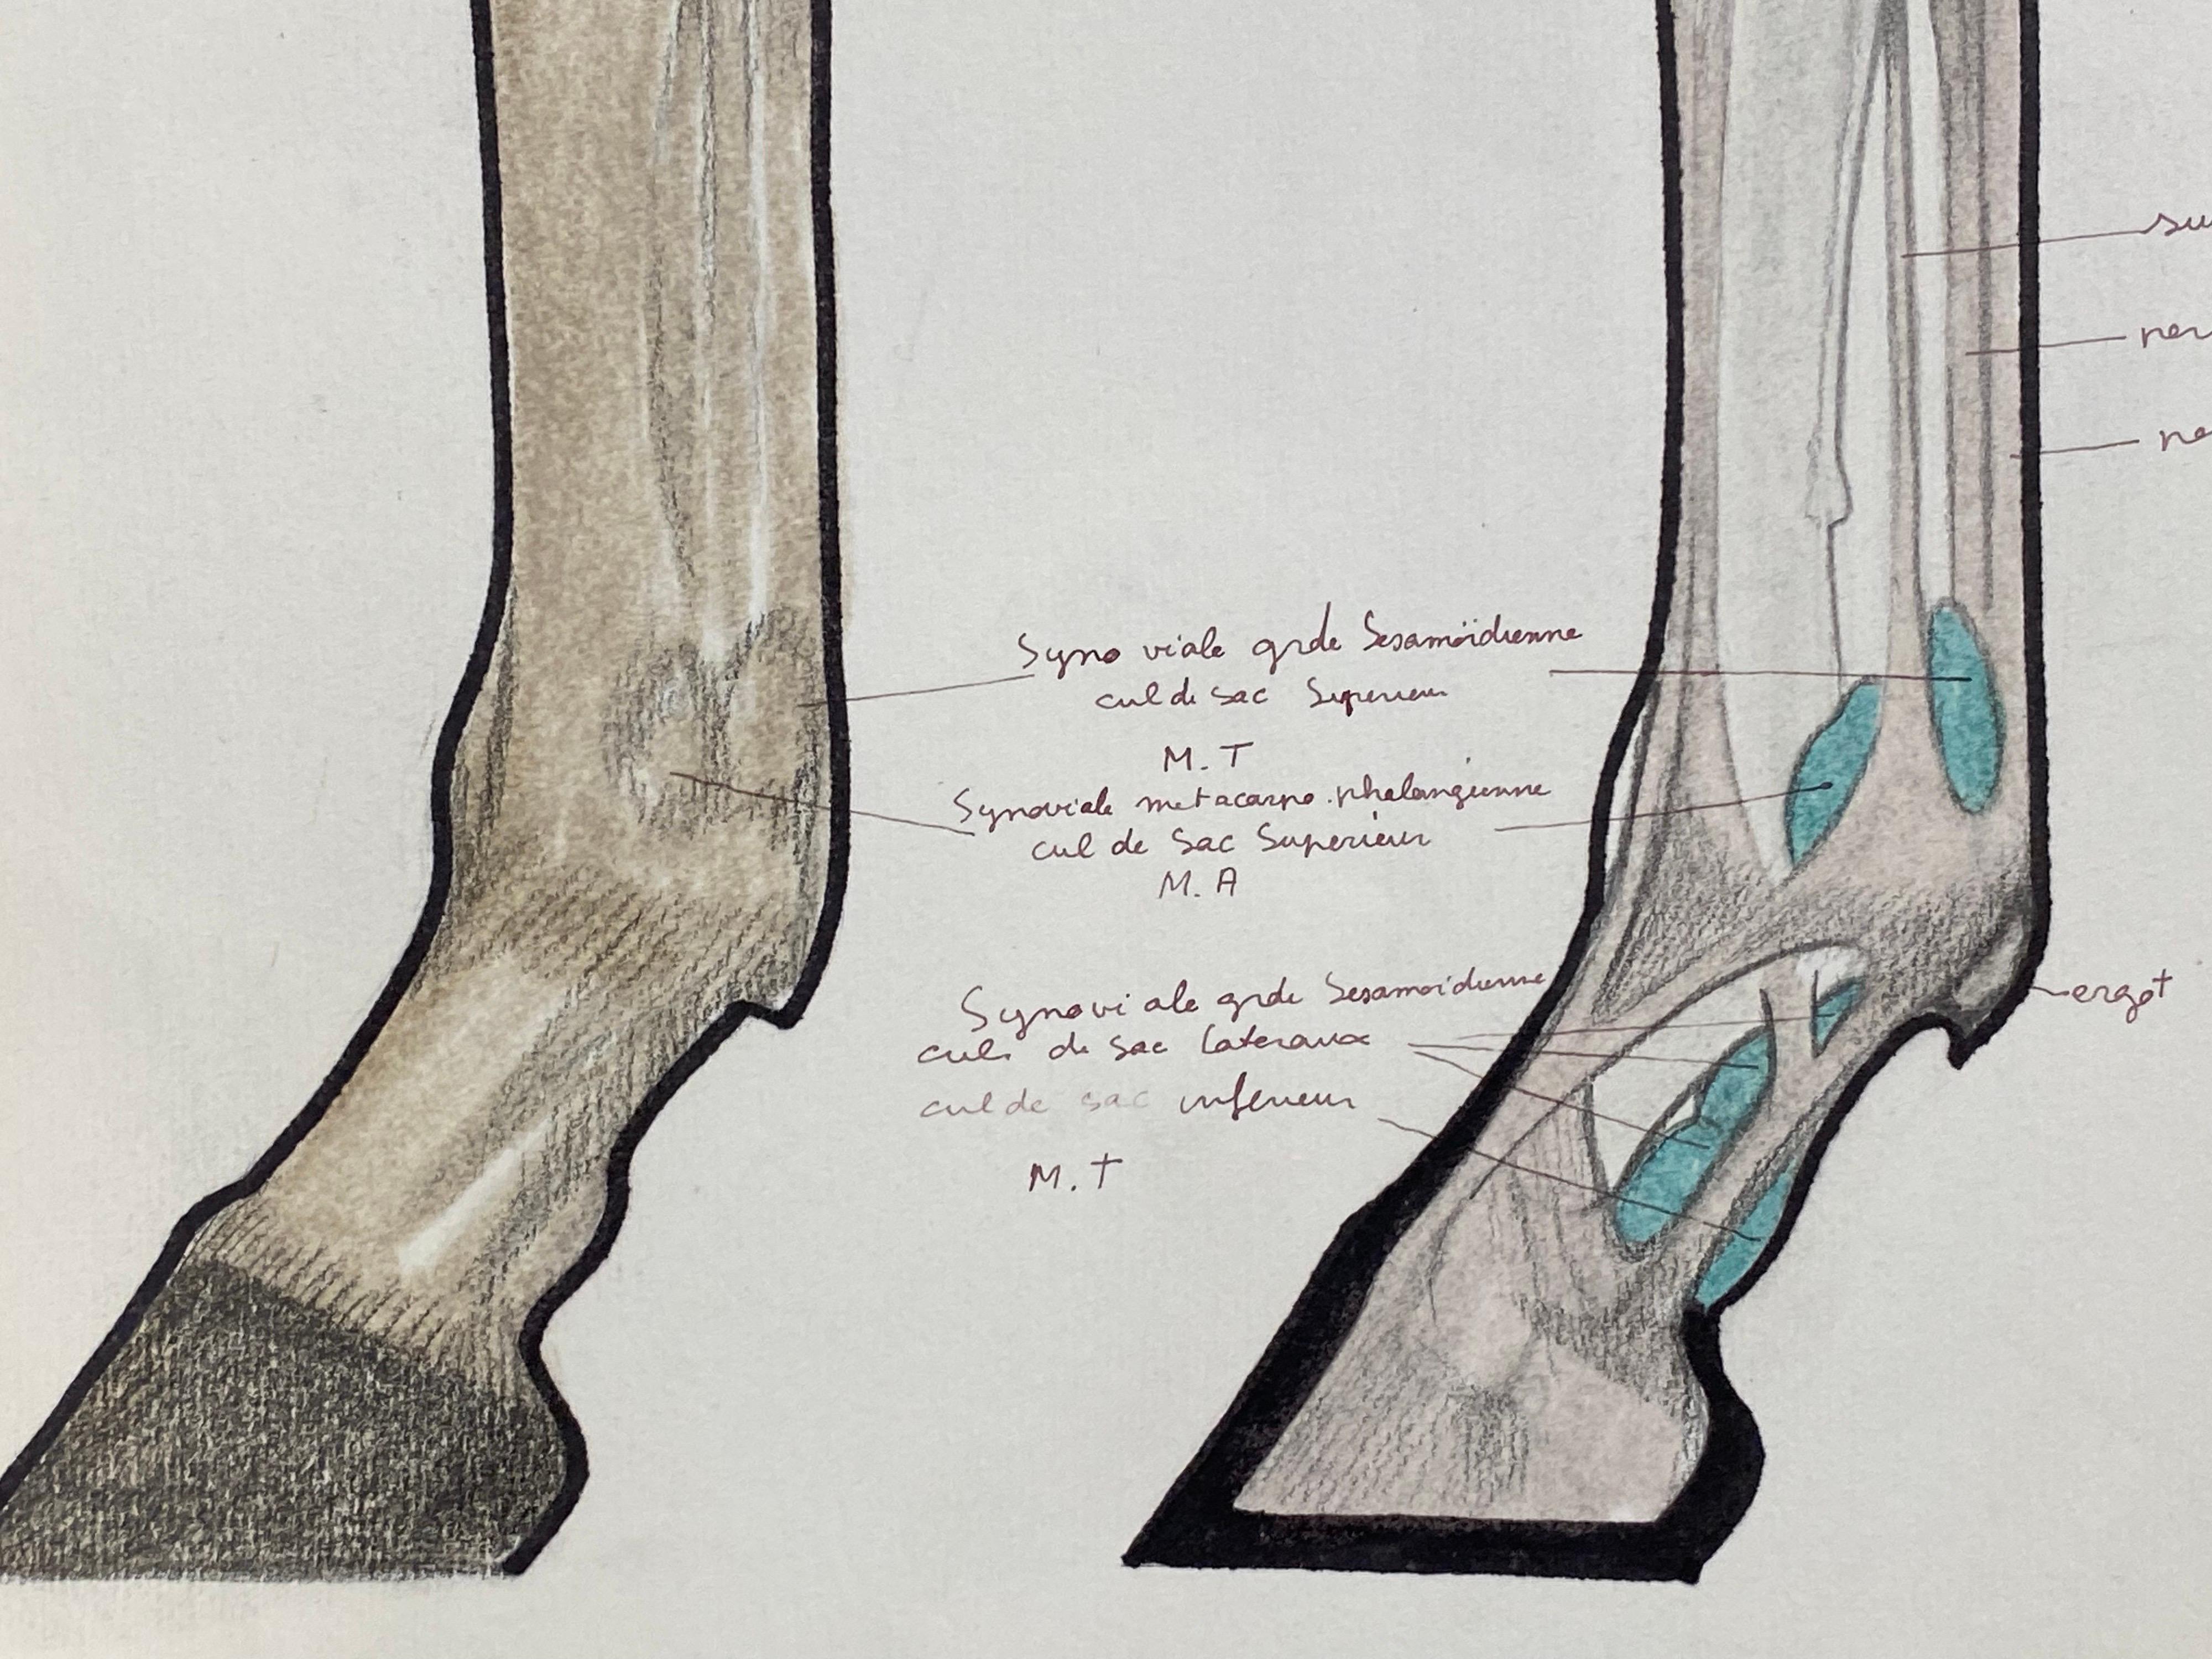 L'anatomie d'un cheval
par Robert Ladou (français 1929-2014)
dessin original collé sur carte dans une chemise bleue/ papier épais, non encadré
dessin : 12 x 19 pouces
taille globale : 19,75 x 12,75 pouces
état : très bon
provenance : de la